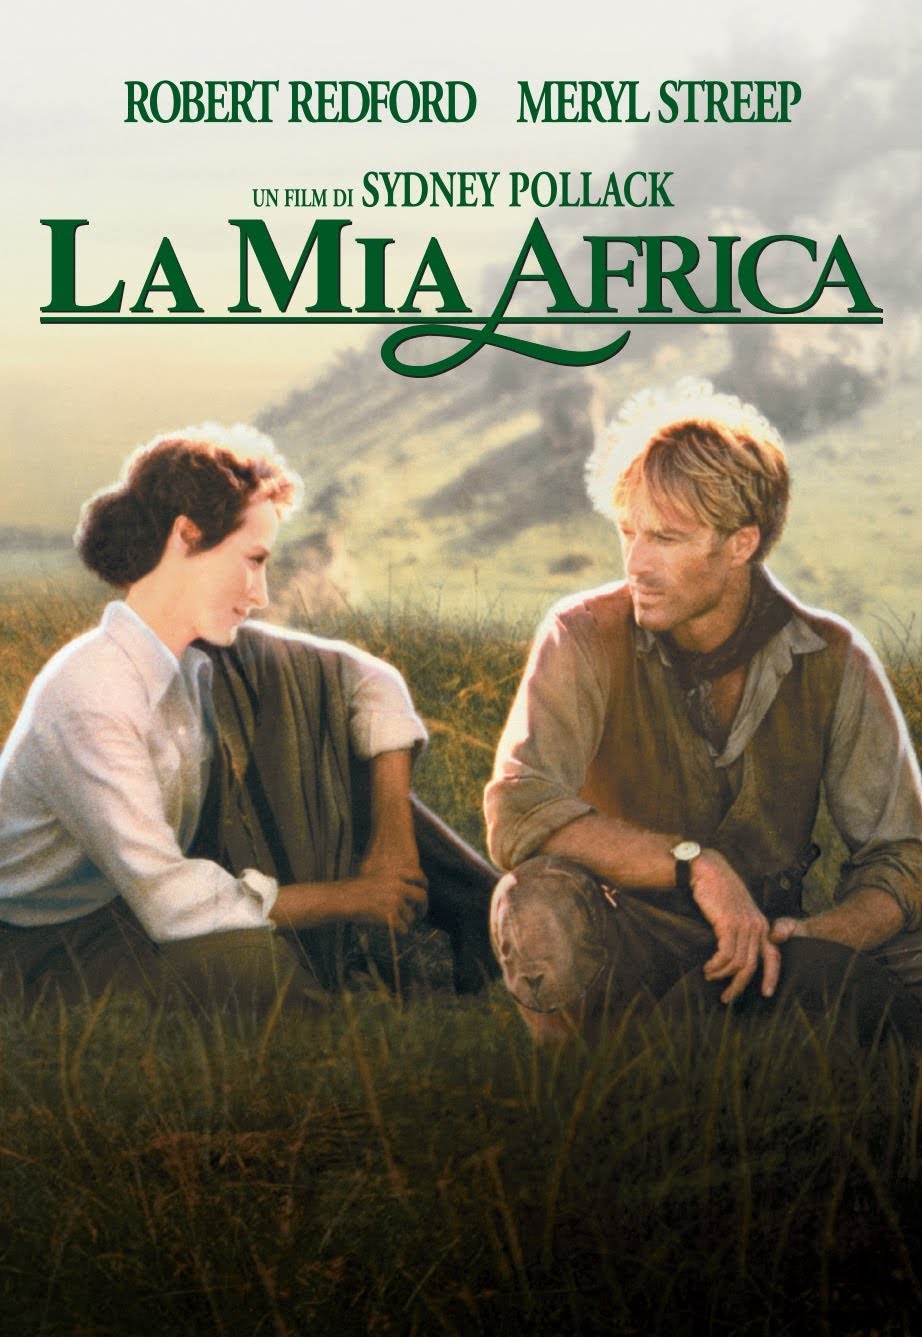 La mia africa [HD] (1986)